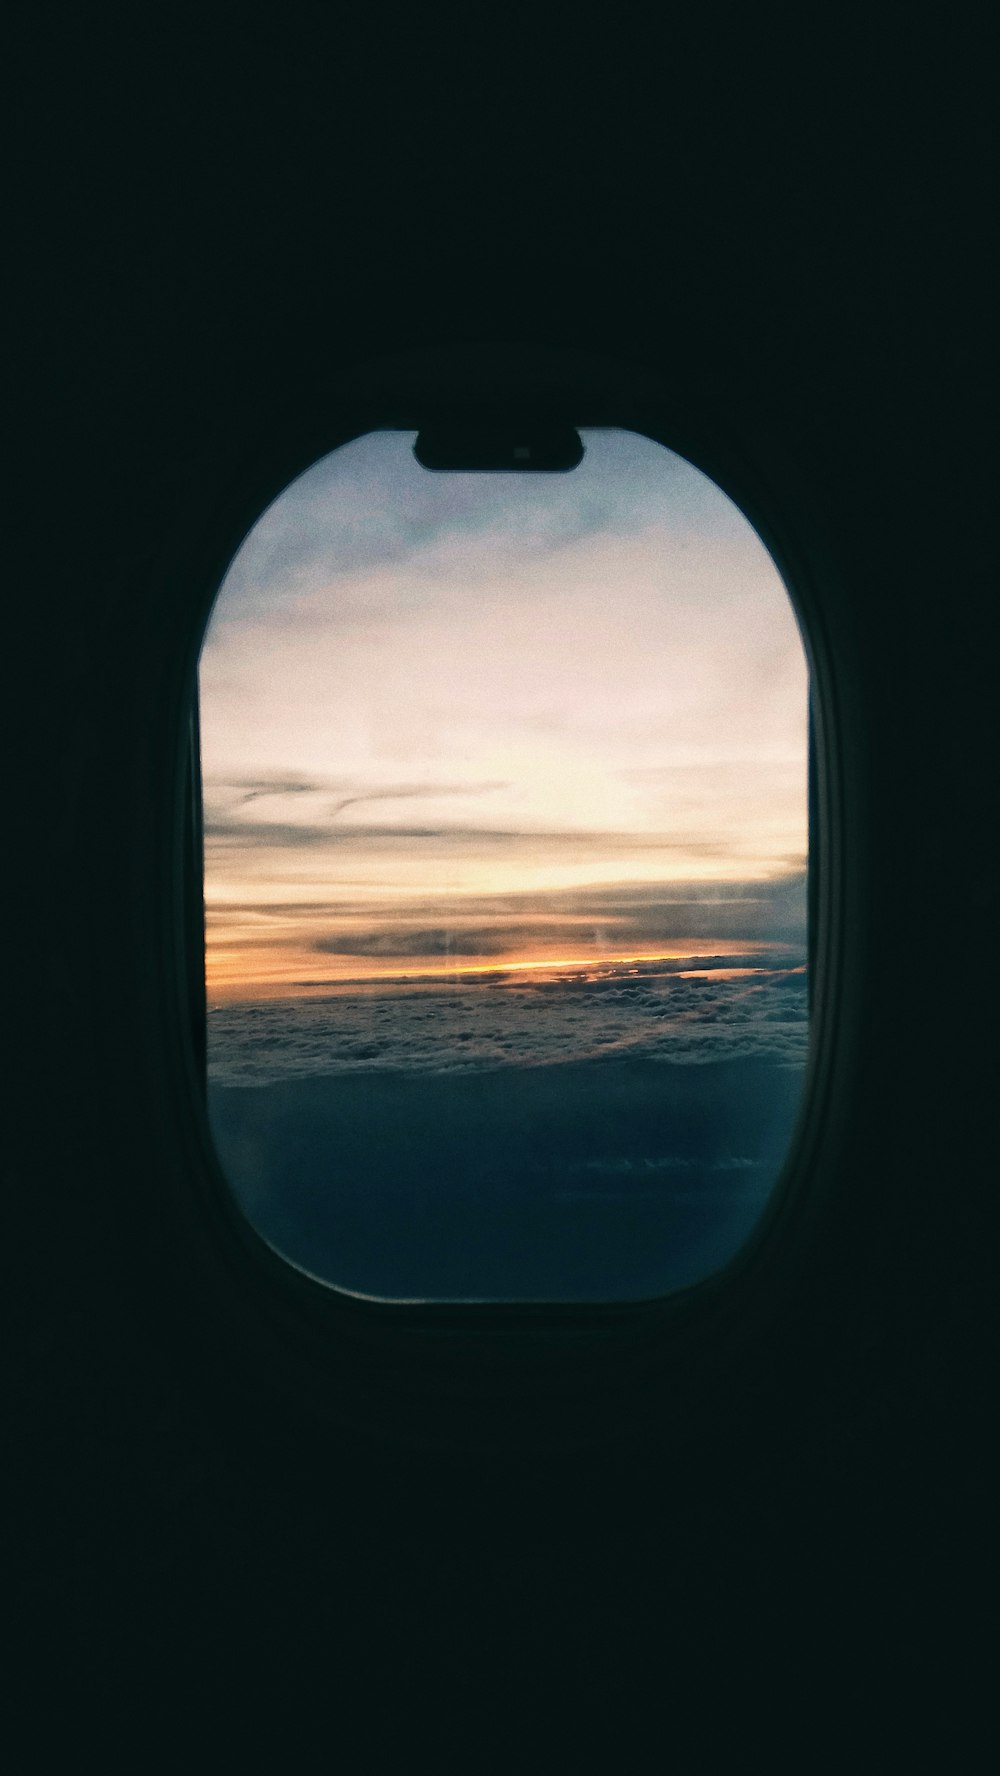 Ventana de cristal del avión durante la hora dorada